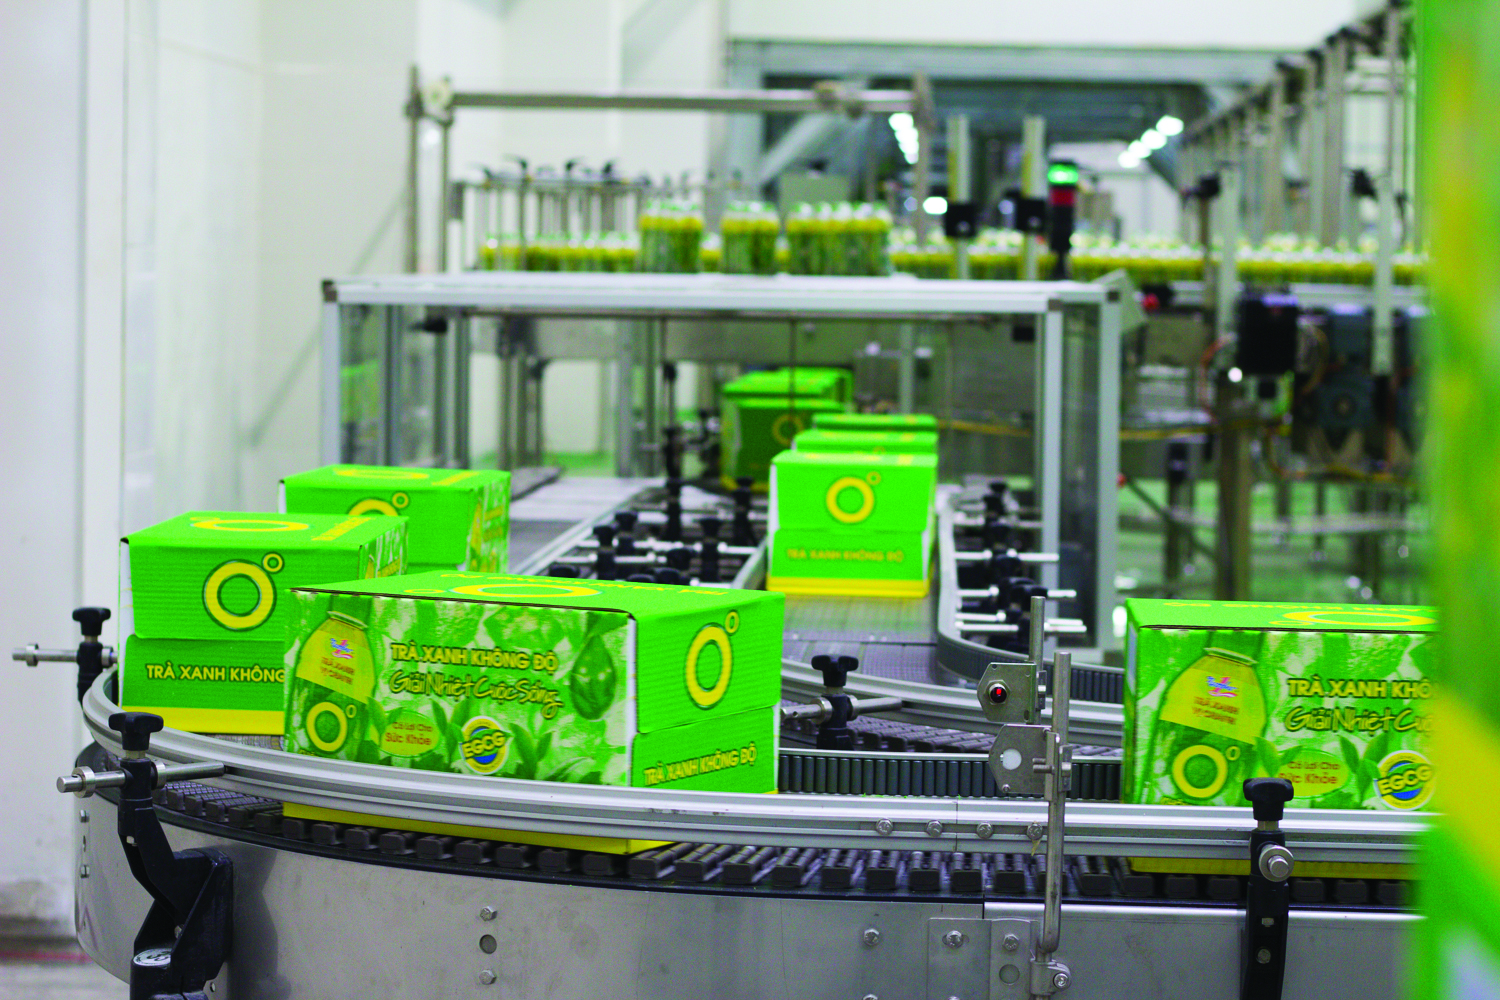  Dây chuyền sản xuất trà xanh không độ ở nhà máy tại Hà Nam.